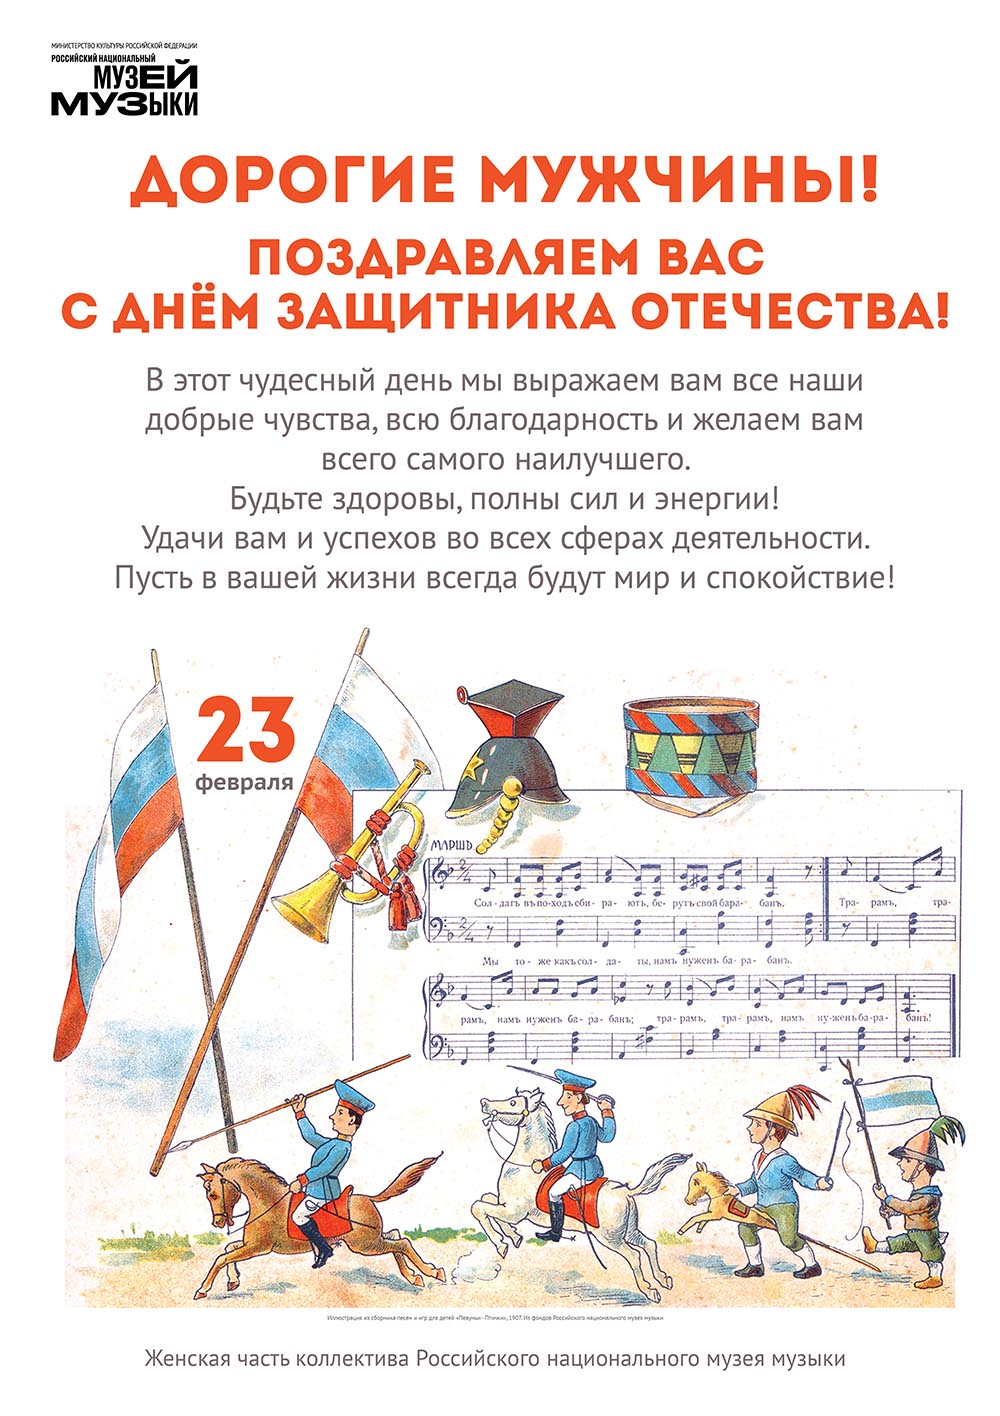 Музей музыки поздравляет с Днём защитника Отечества!